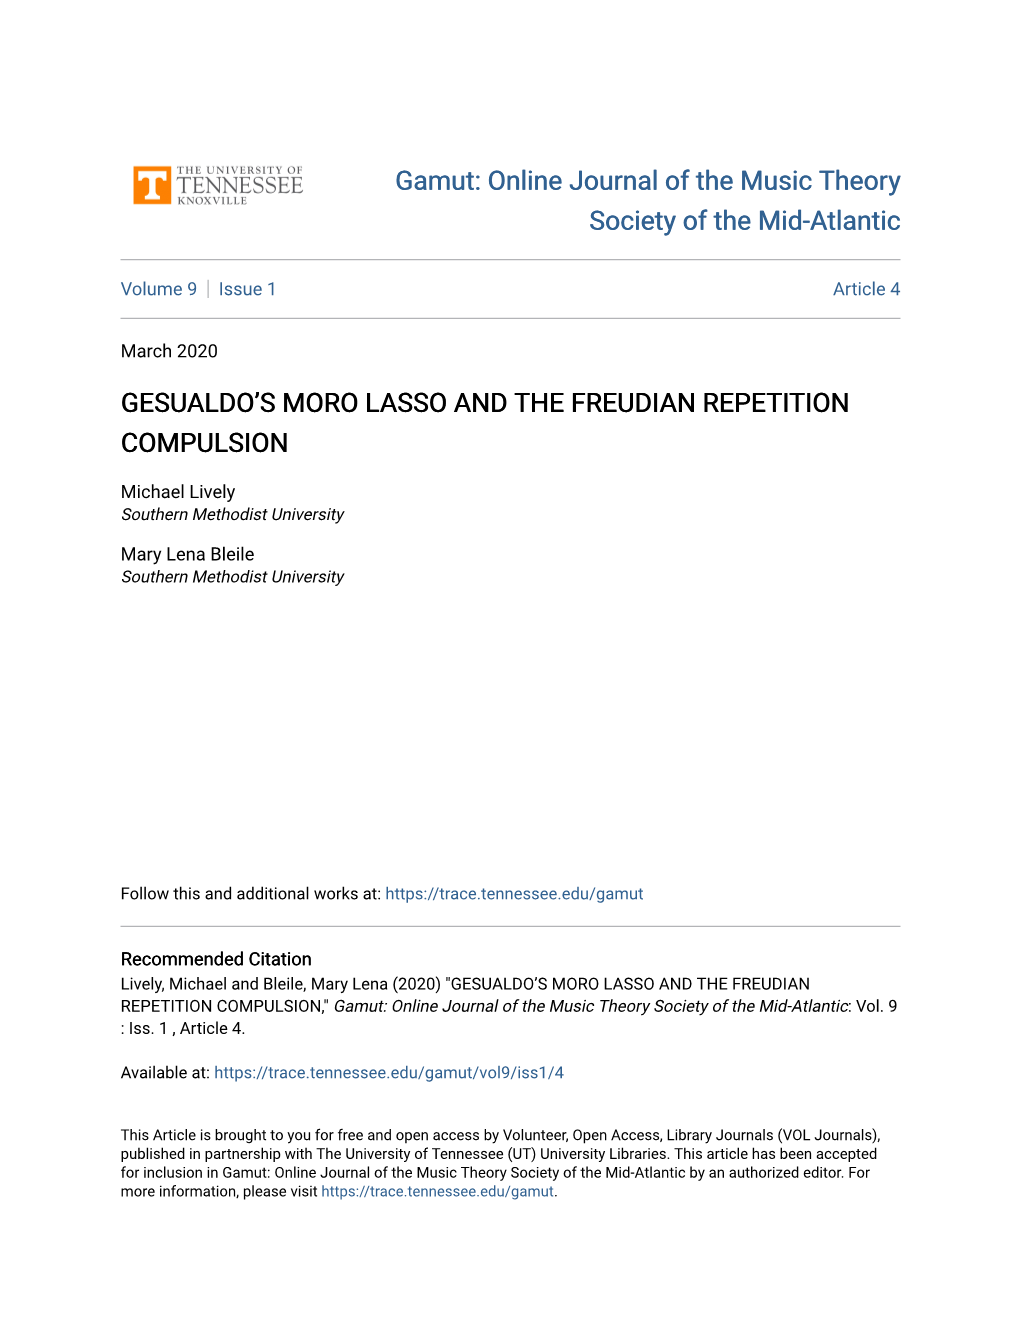 Gesualdo's Moro Lasso and the Freudian Repetition Compulsion